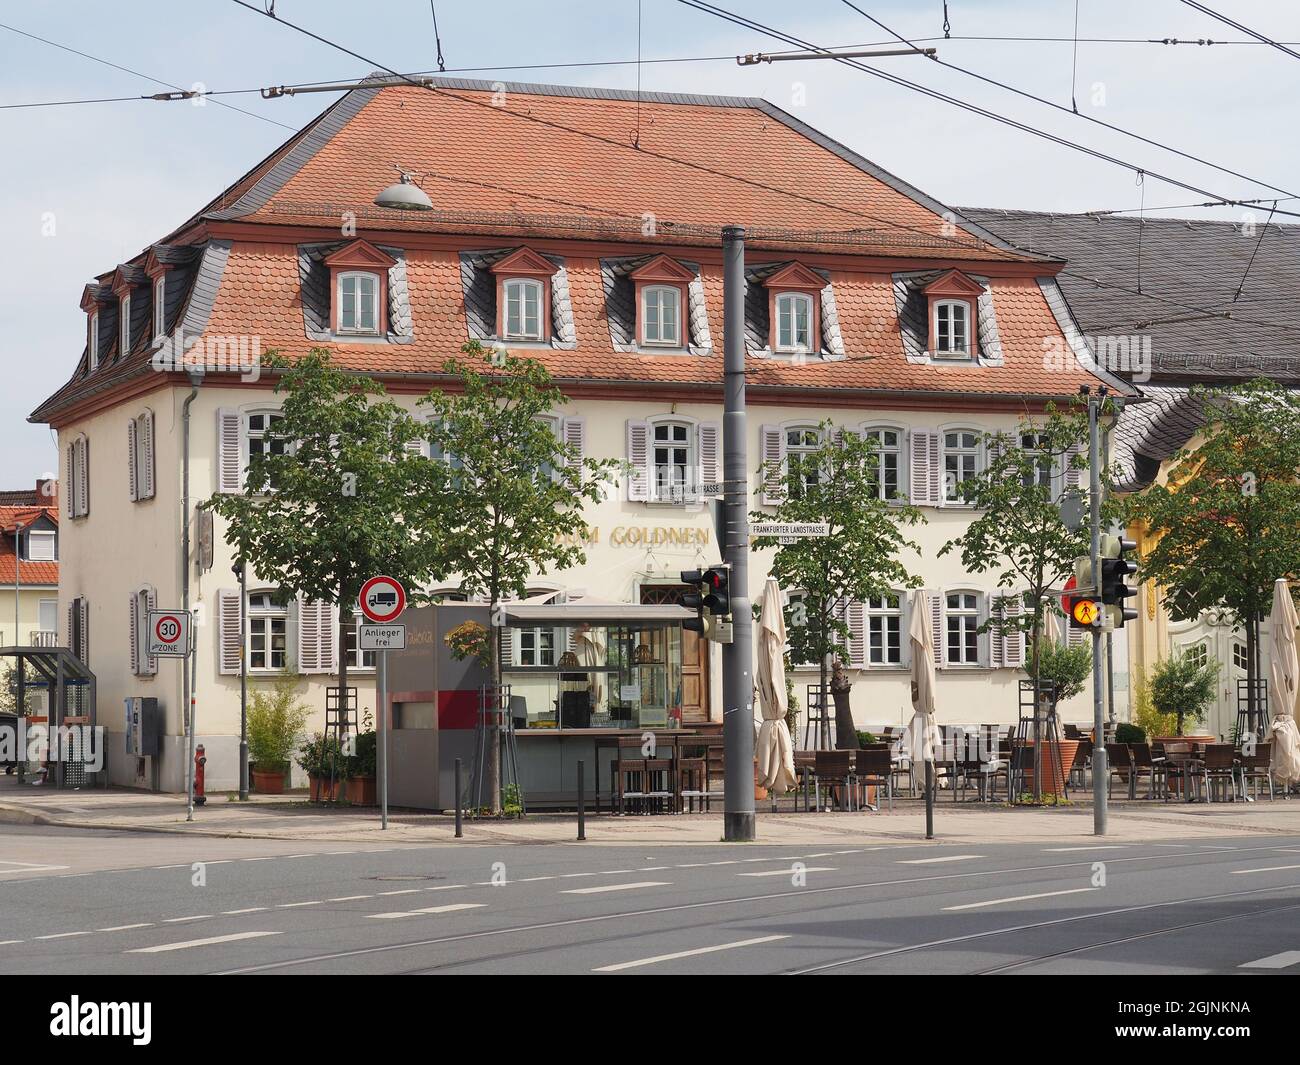 DARMSTADT ARHEILGEN, GERMANY - Aug 12, 2021: An old Zum Goldenen Loewen building in Darmstadt, Germany Stock Photo